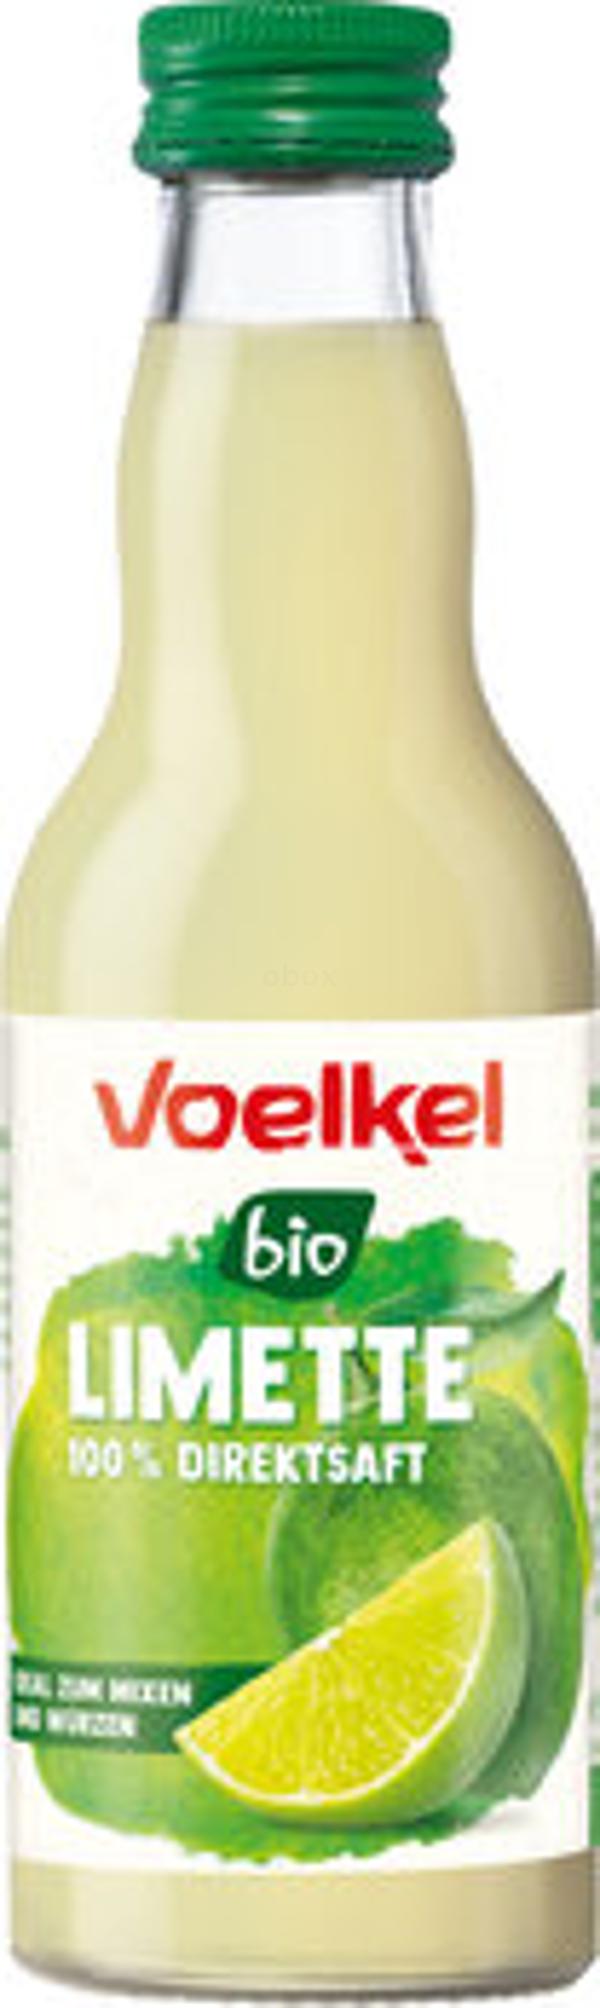 Produktfoto zu Limettensaft Voelkl, 0,2l